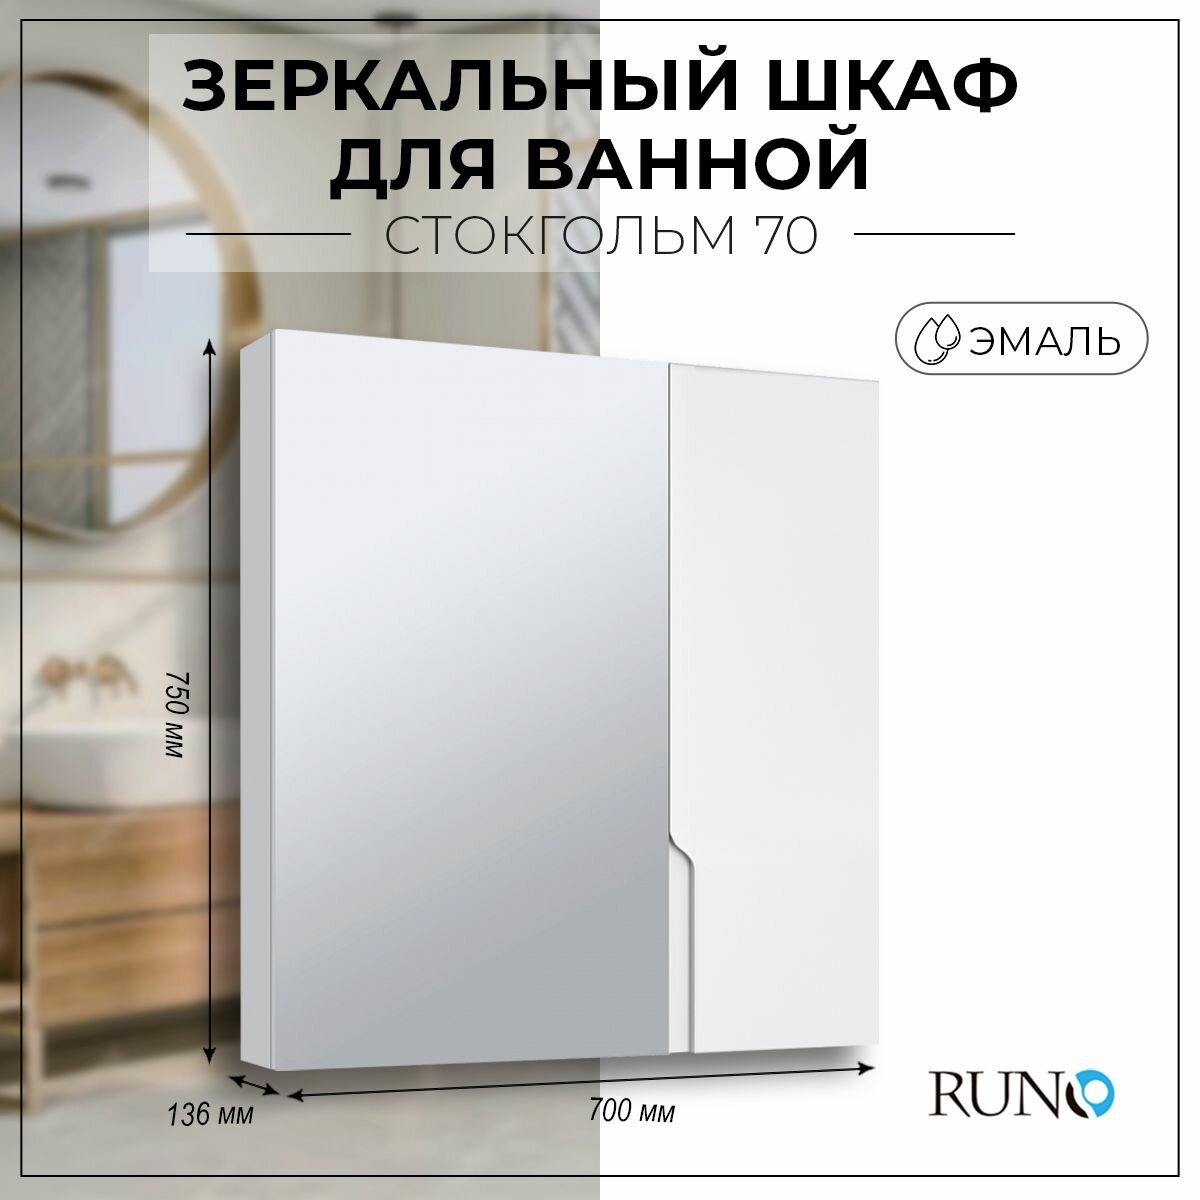 Зеркало шкаф для ванной / Runo / Стокгольм 70 / полка для ванной